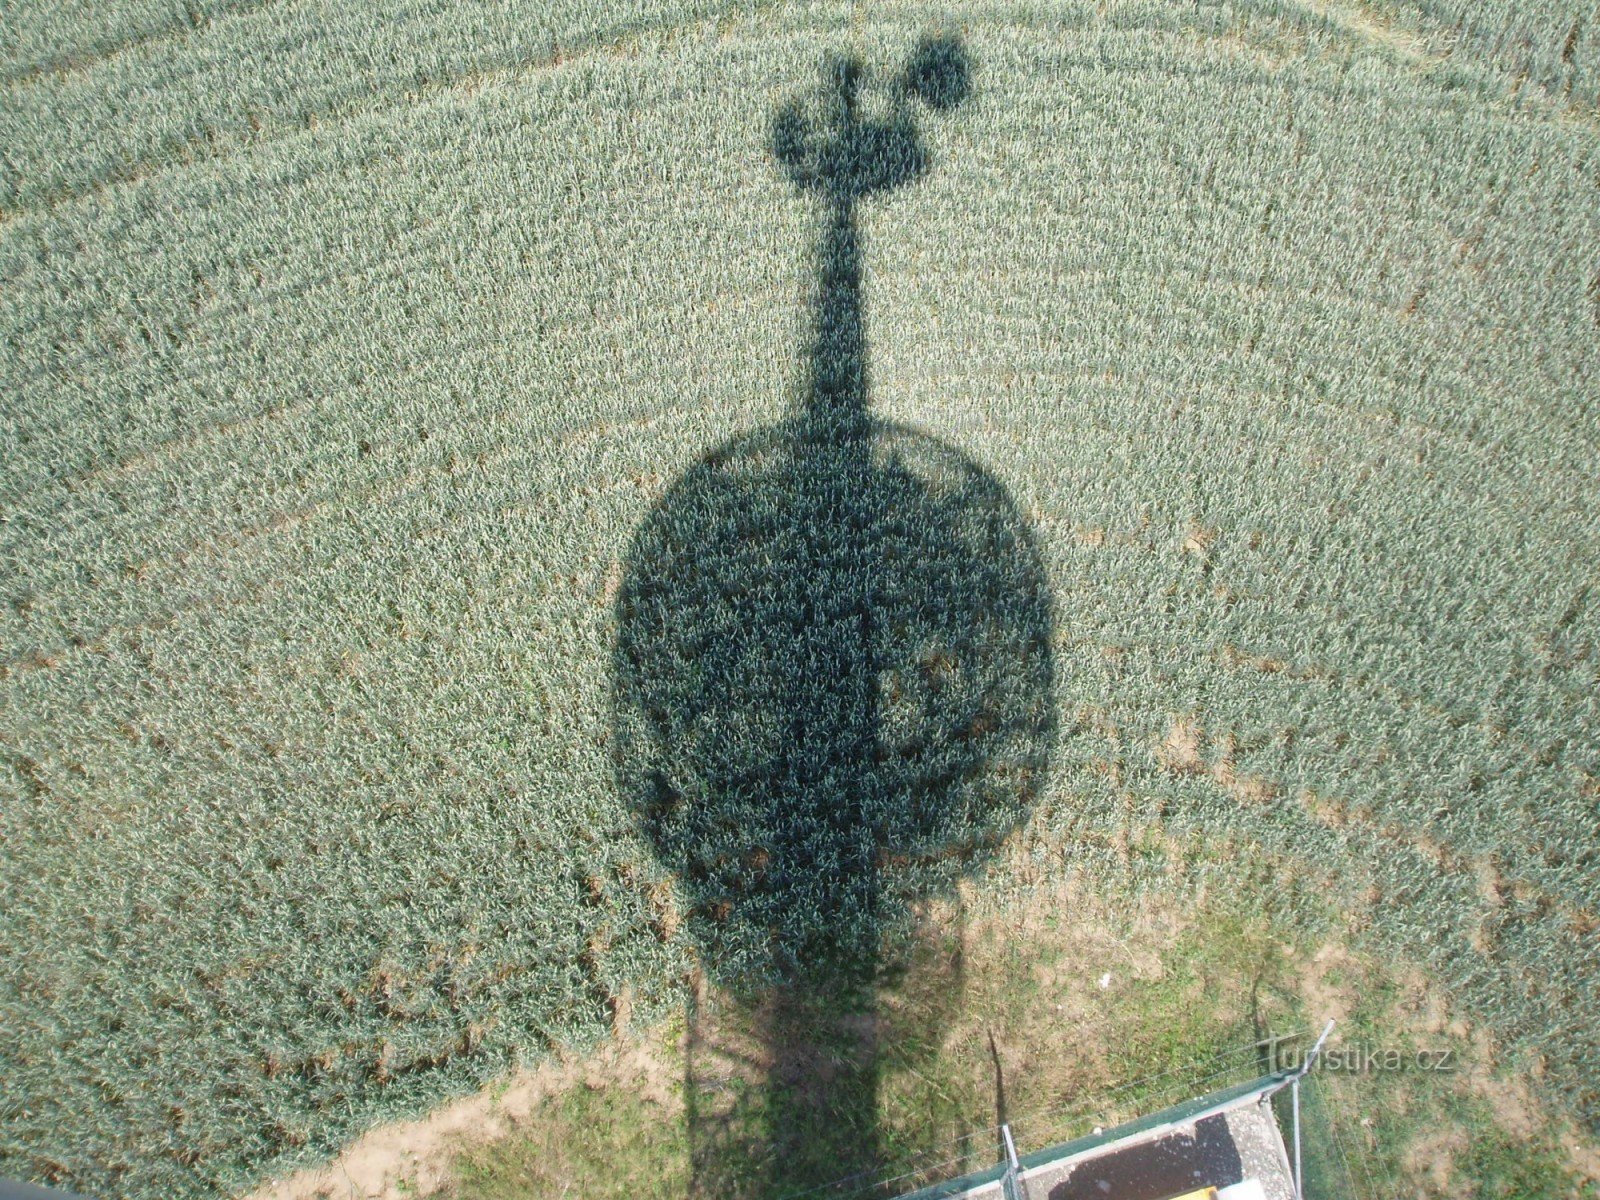 Da torre de observação você pode ver a mesma torre de observação, projetada no campo